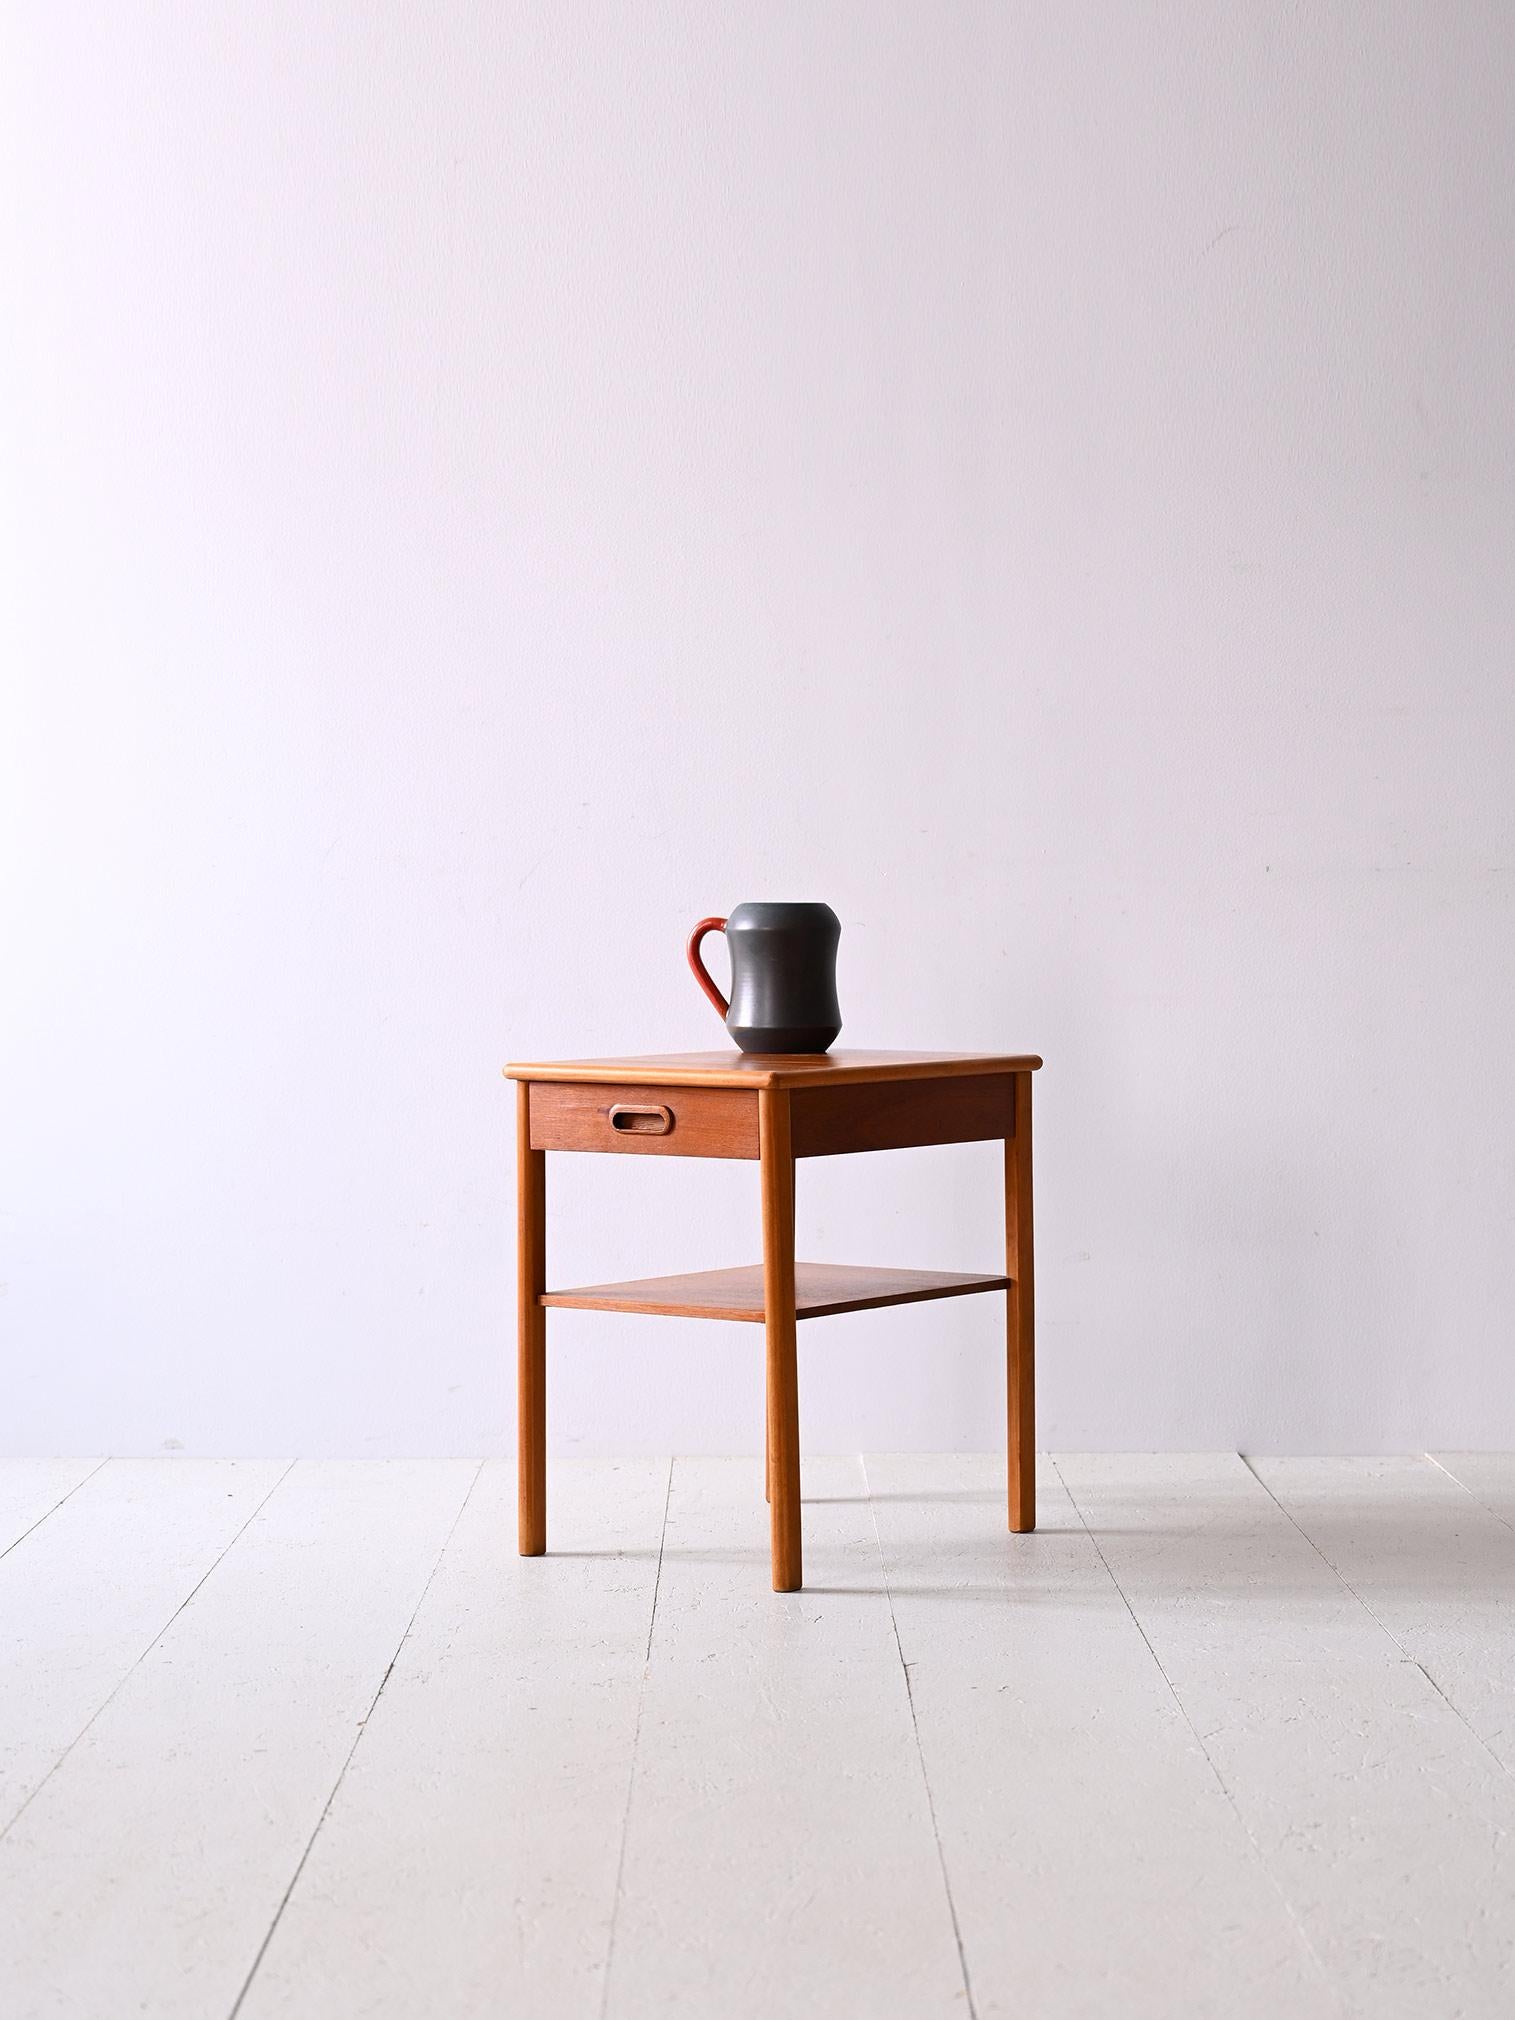 Originaler Nachttisch aus Teakholz aus den 1960er Jahren.

Ein Nachttisch im perfekten skandinavischen Stil, der die Vorliebe für einfache, moderne Linien nachzeichnet.
Bestehend aus langen, konisch zulaufenden Beinen, Zeitschriftenablage und